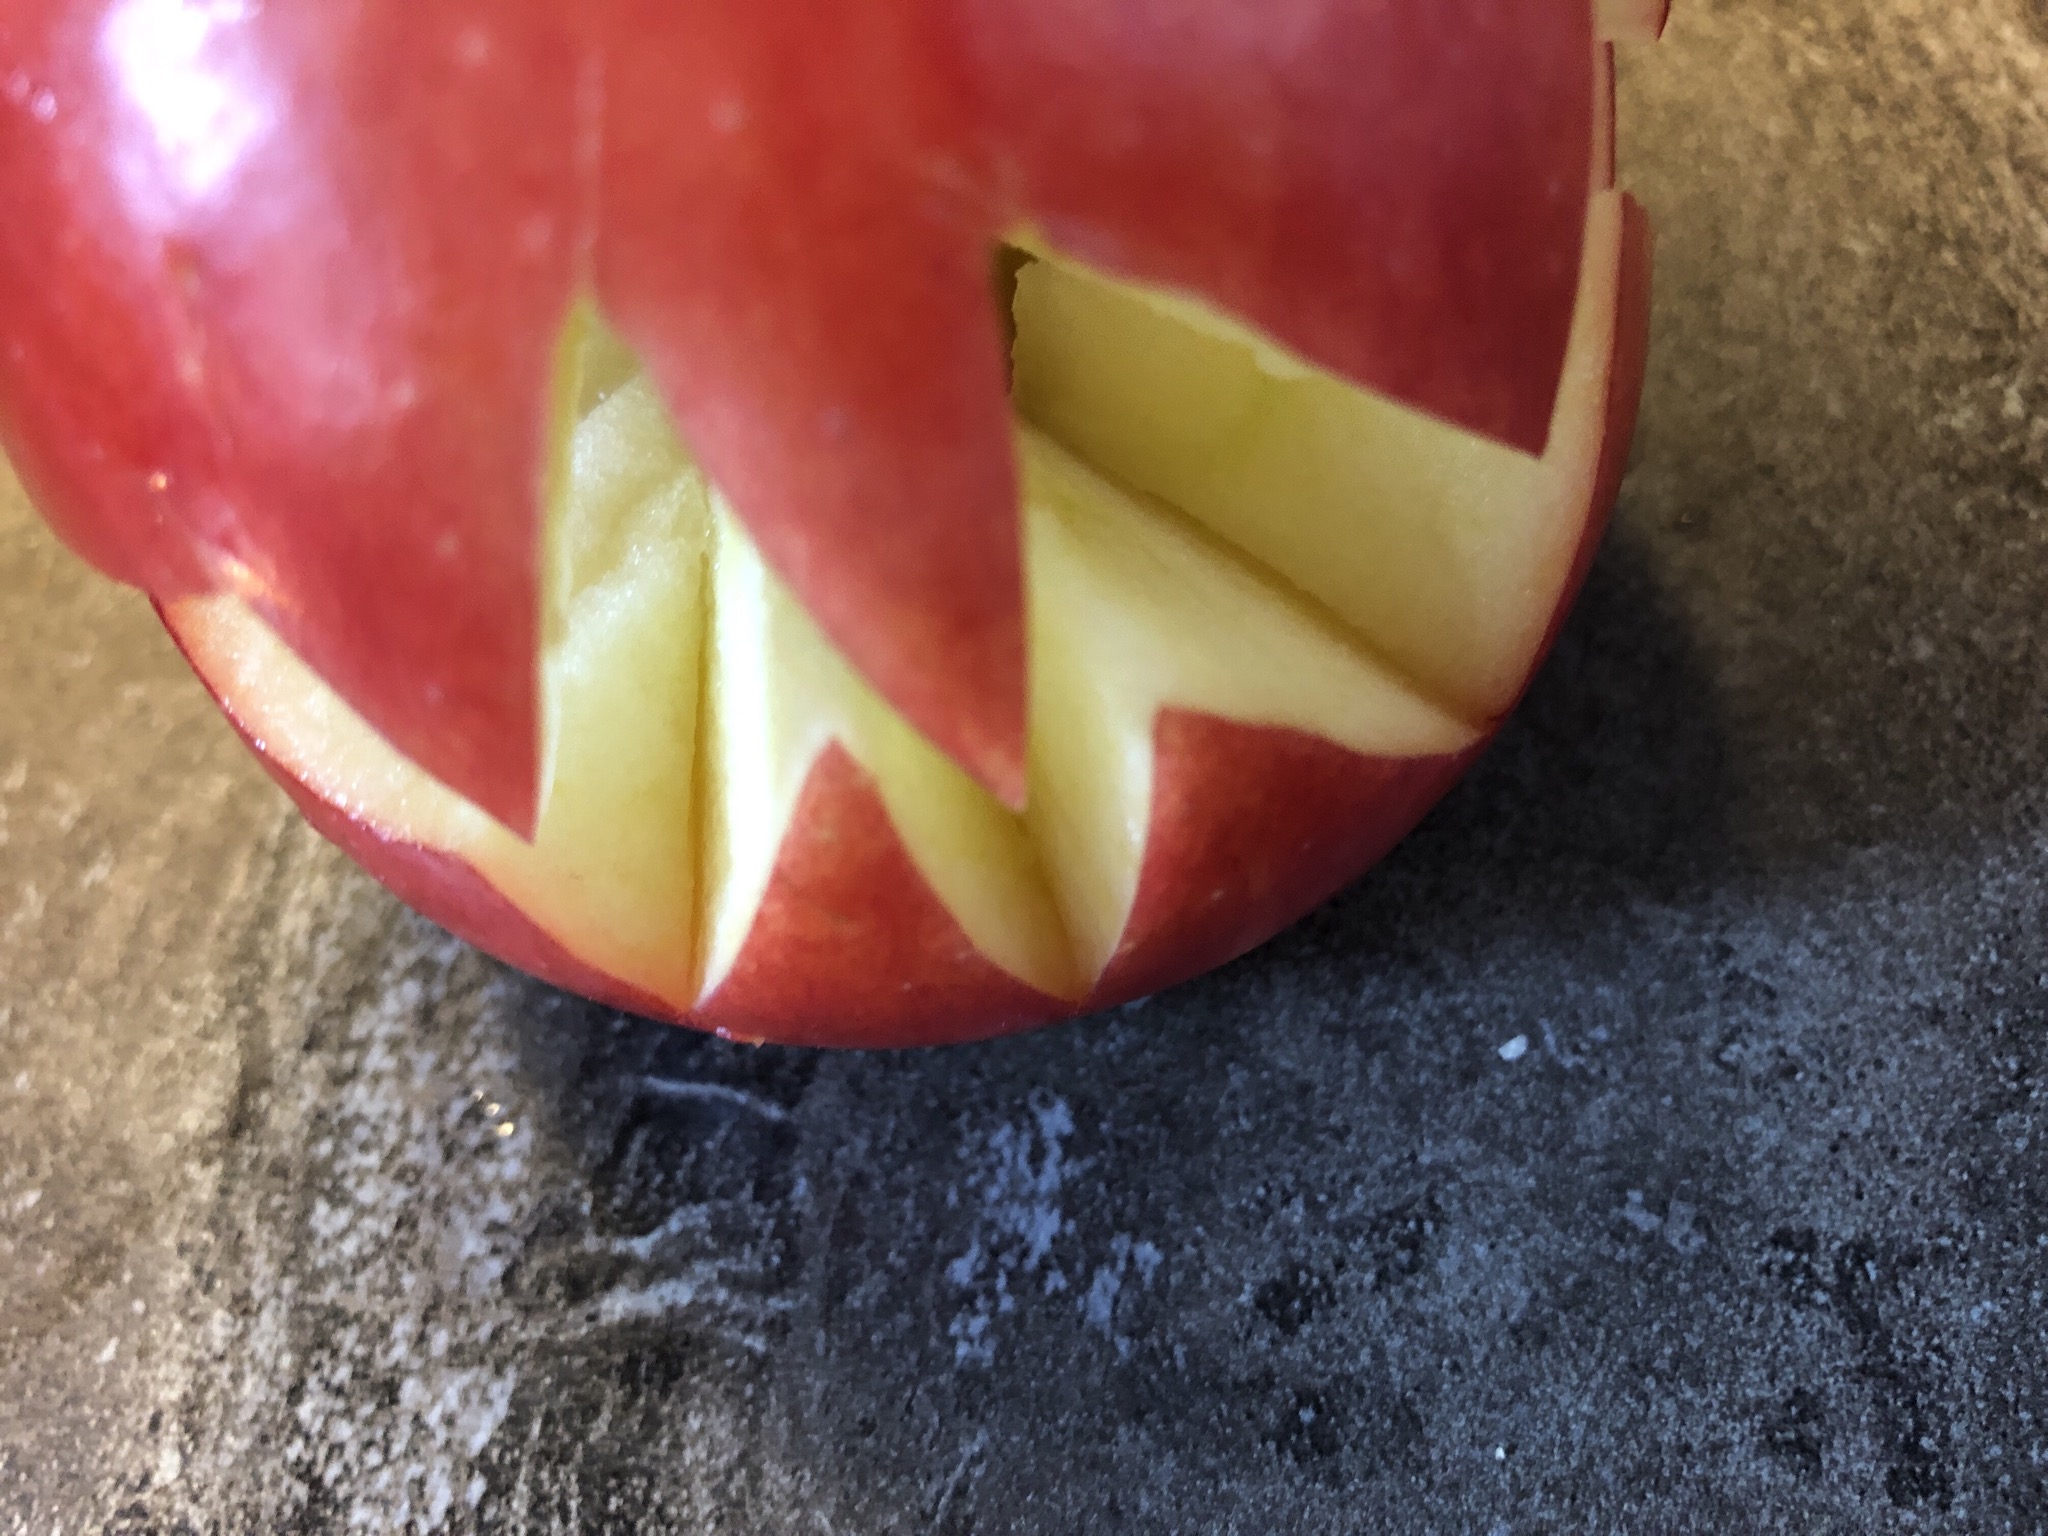 Bild zum Schritt 4 für die Kinder-Beschäftigung: 'Den geschnittenen Apfel vorsichtig auseinander drehen.'